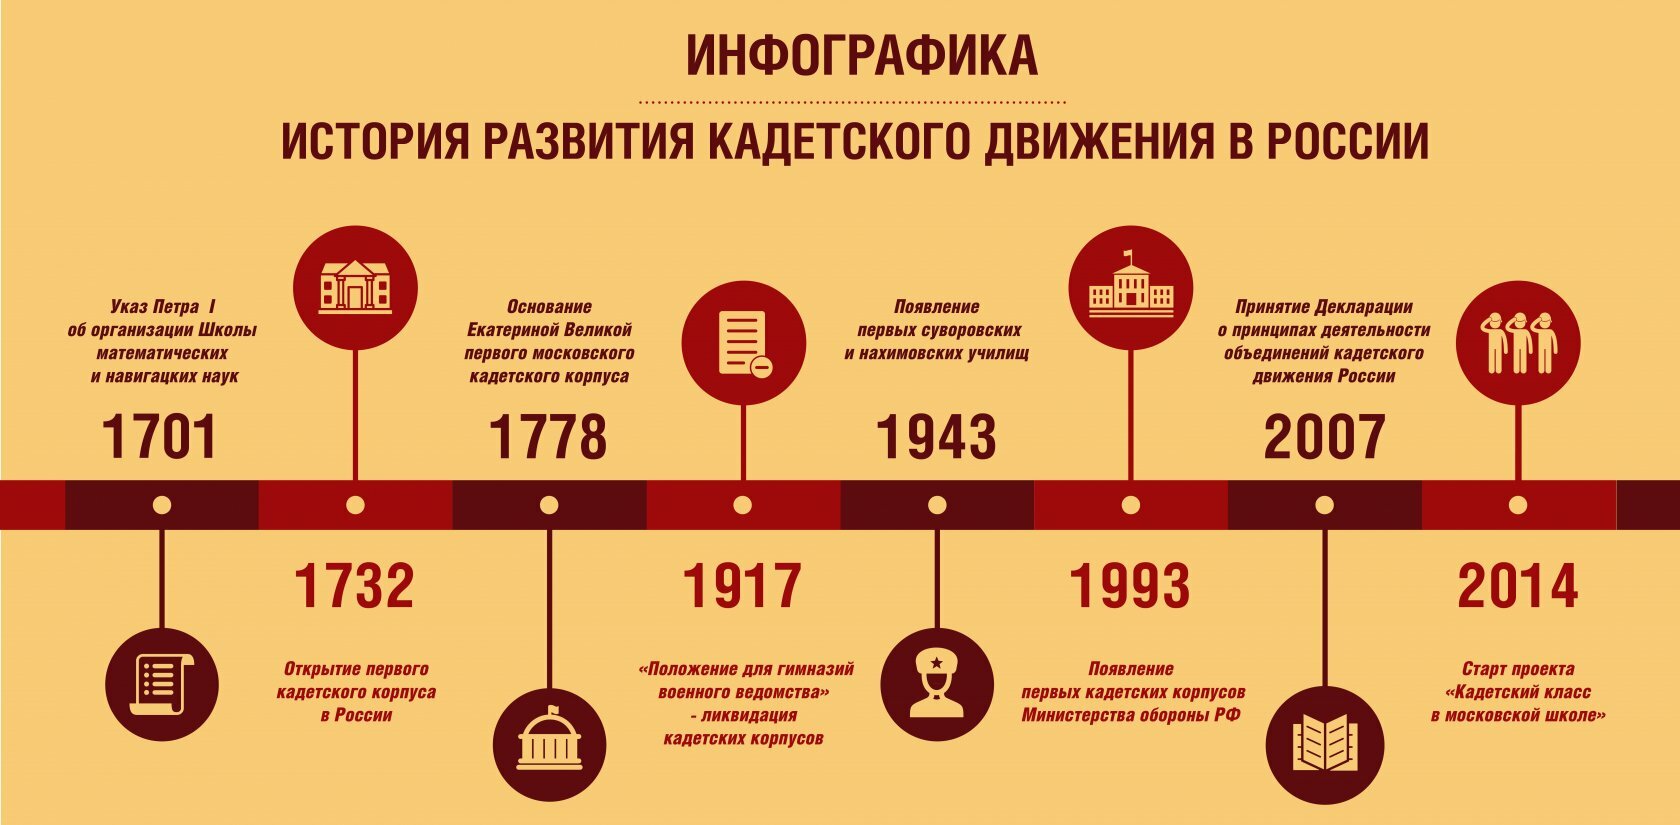 История развития кадетского движения в России (инфографика)